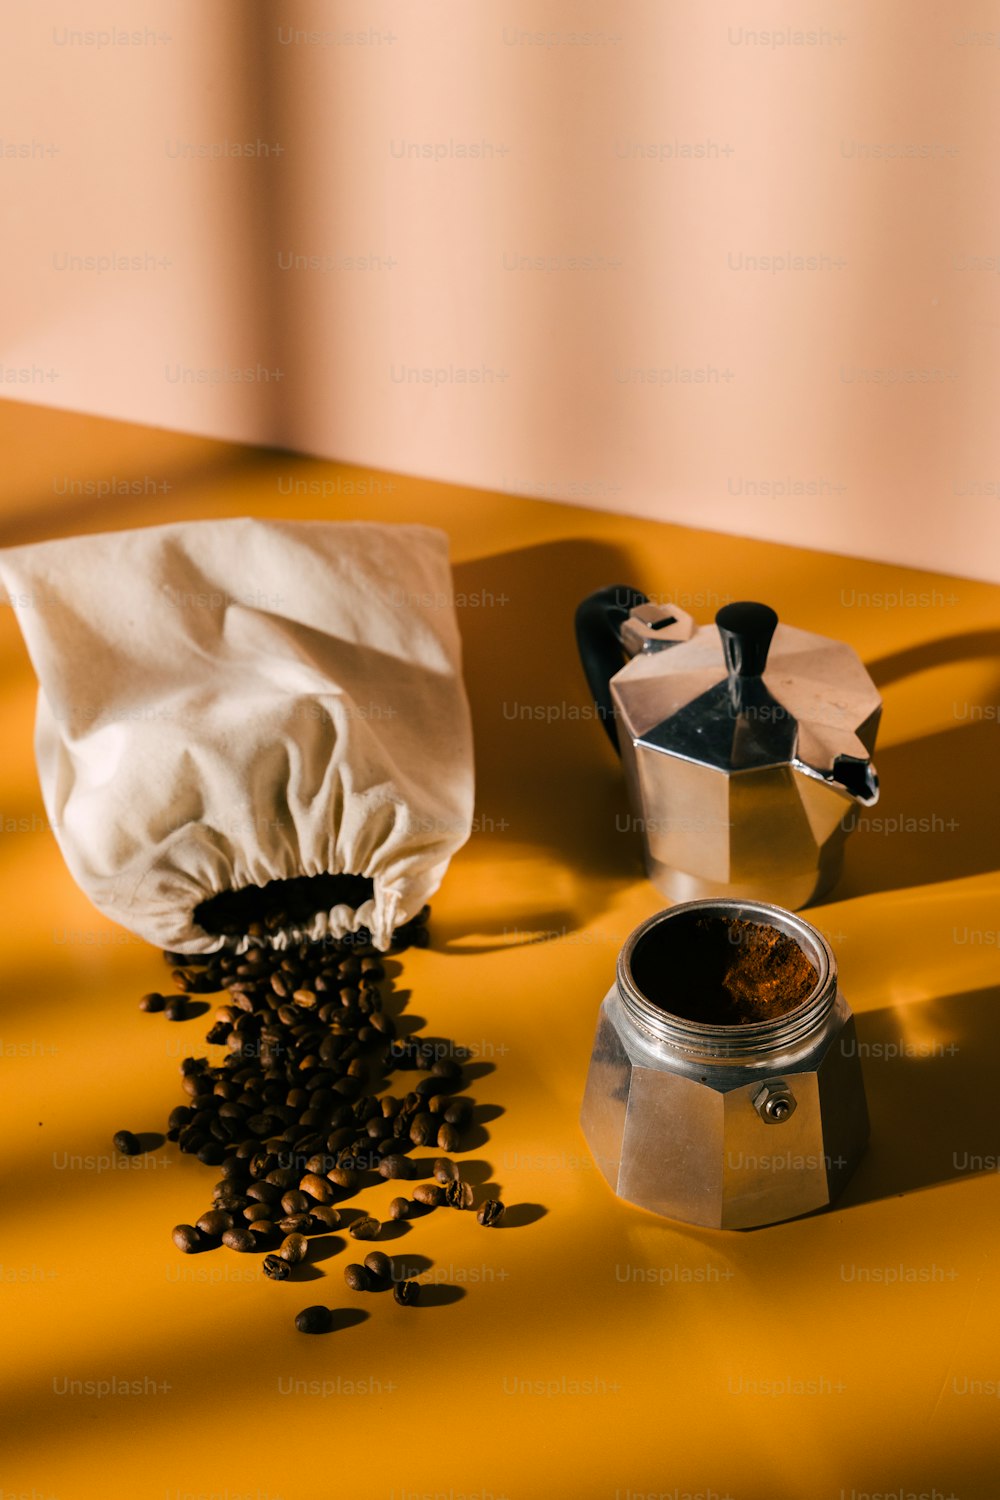 une canette de café à côté d’un récipient de grains de café